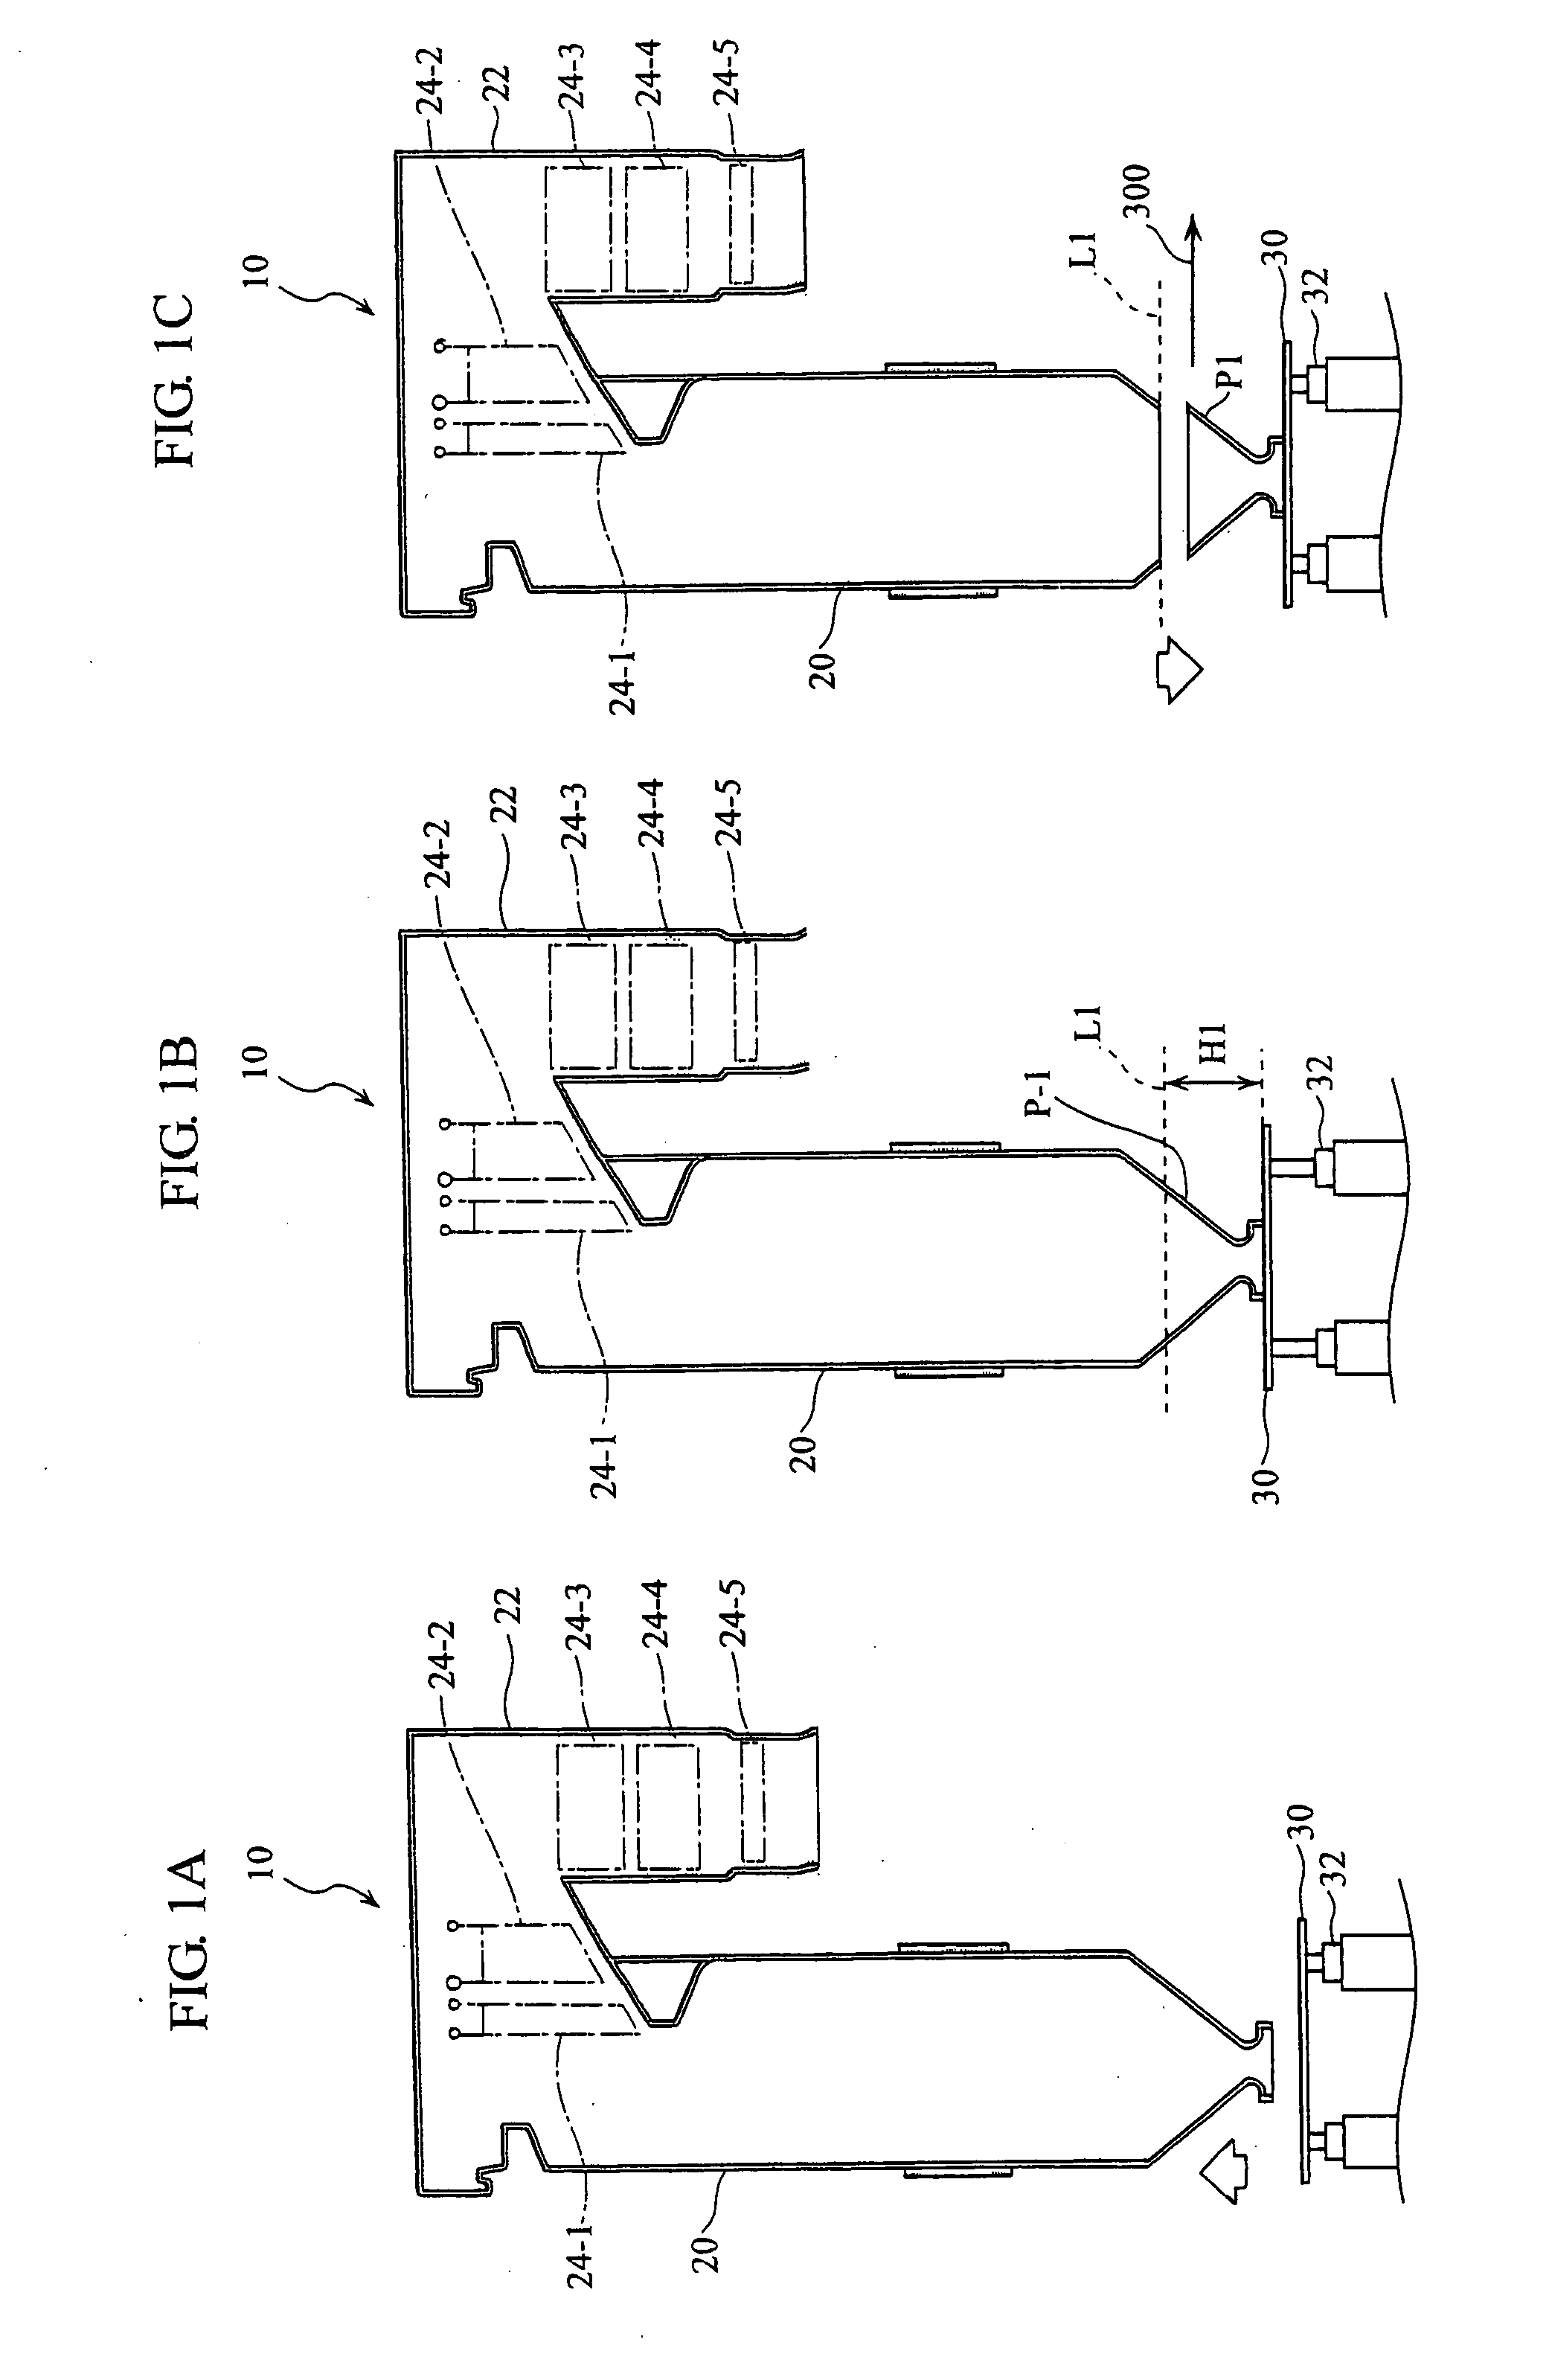 Method for disassembling a boiler